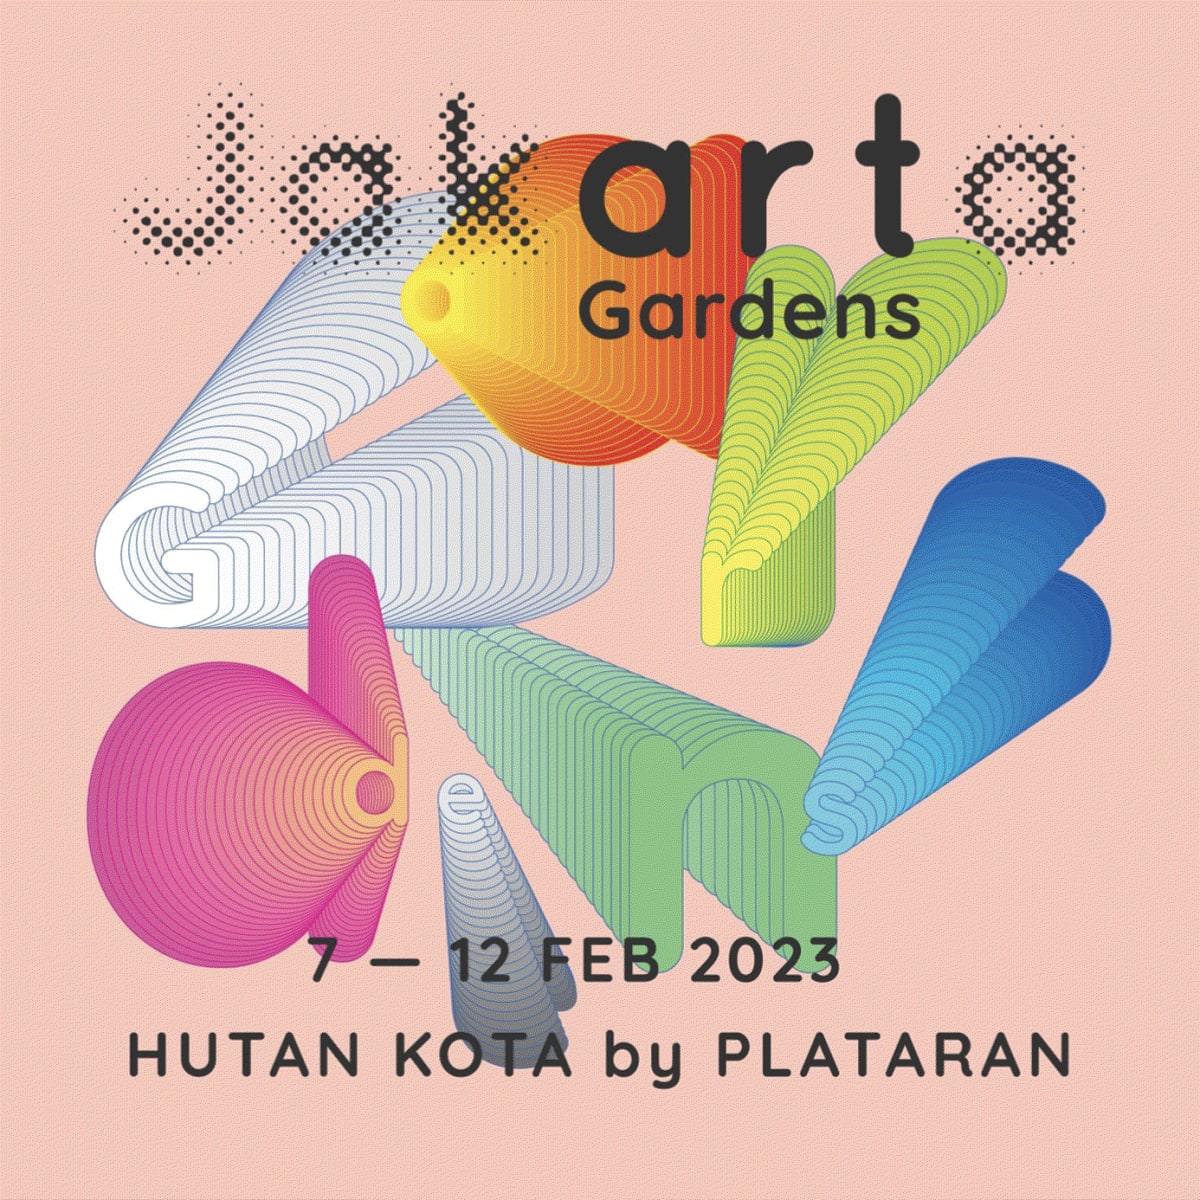 Art Jakarta Gardens 2023